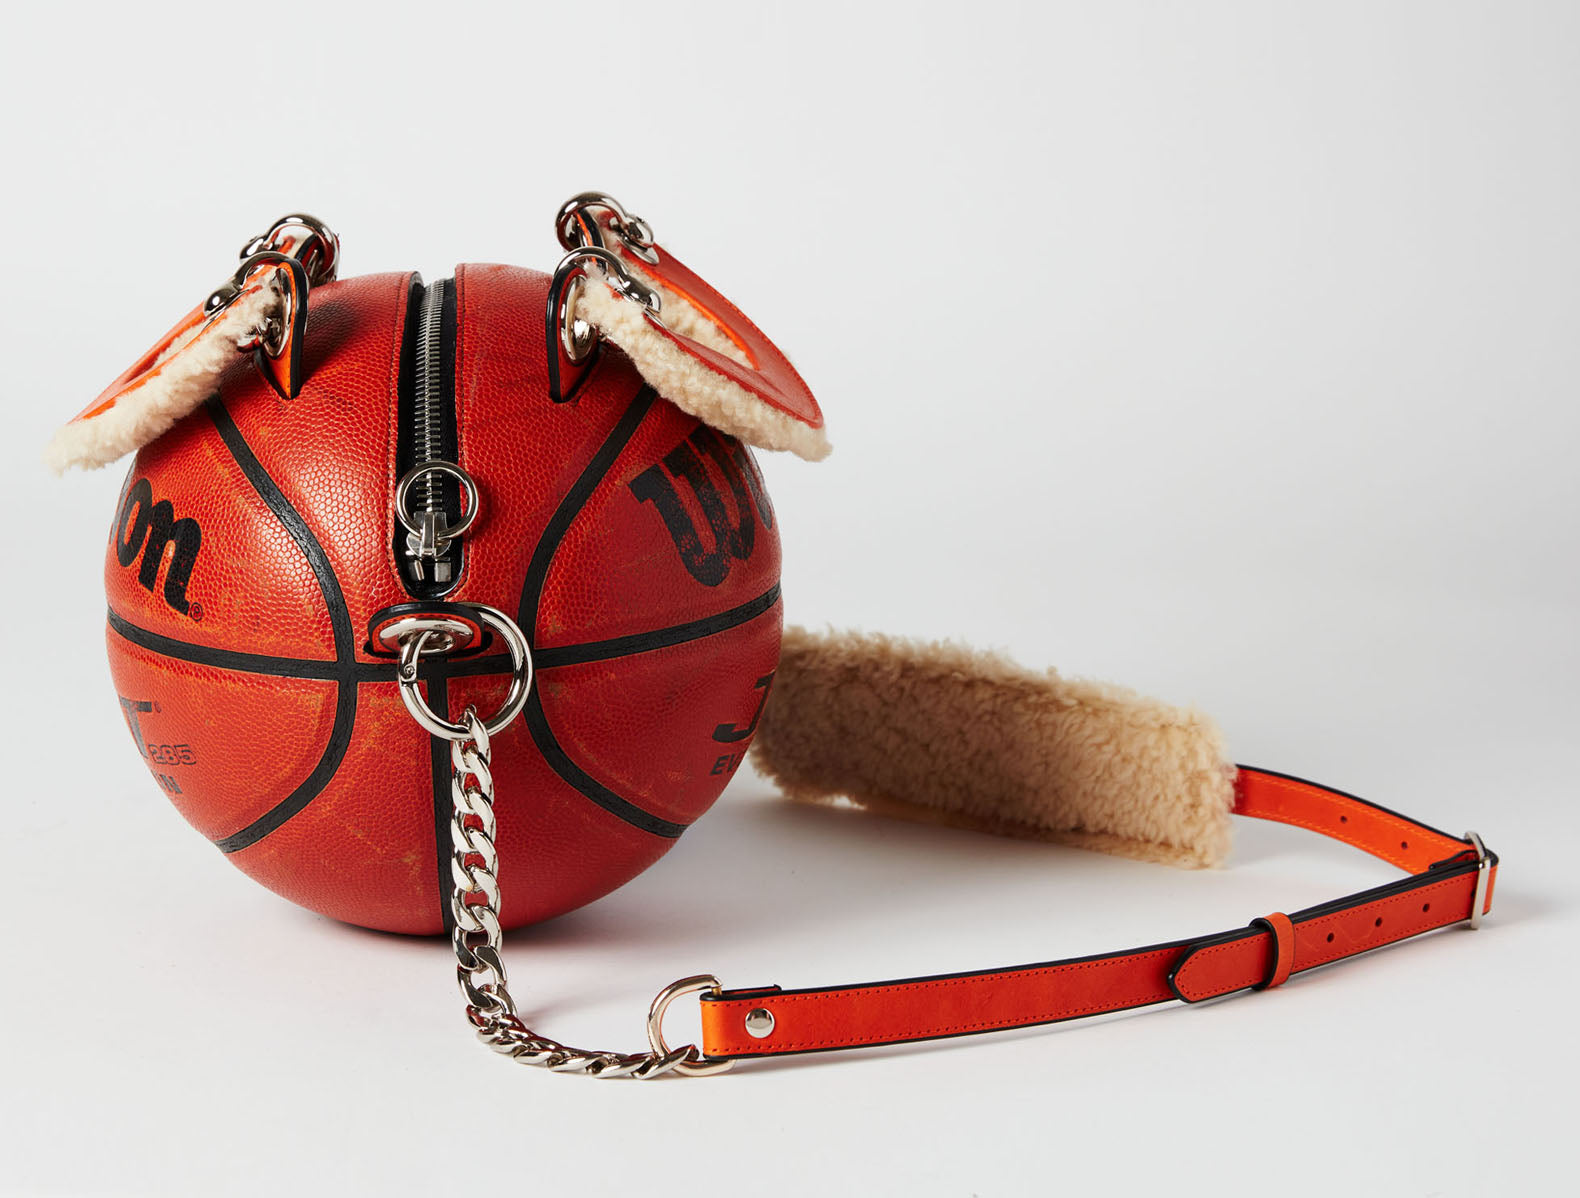 Classic Vintage Wilson Basketball Bag